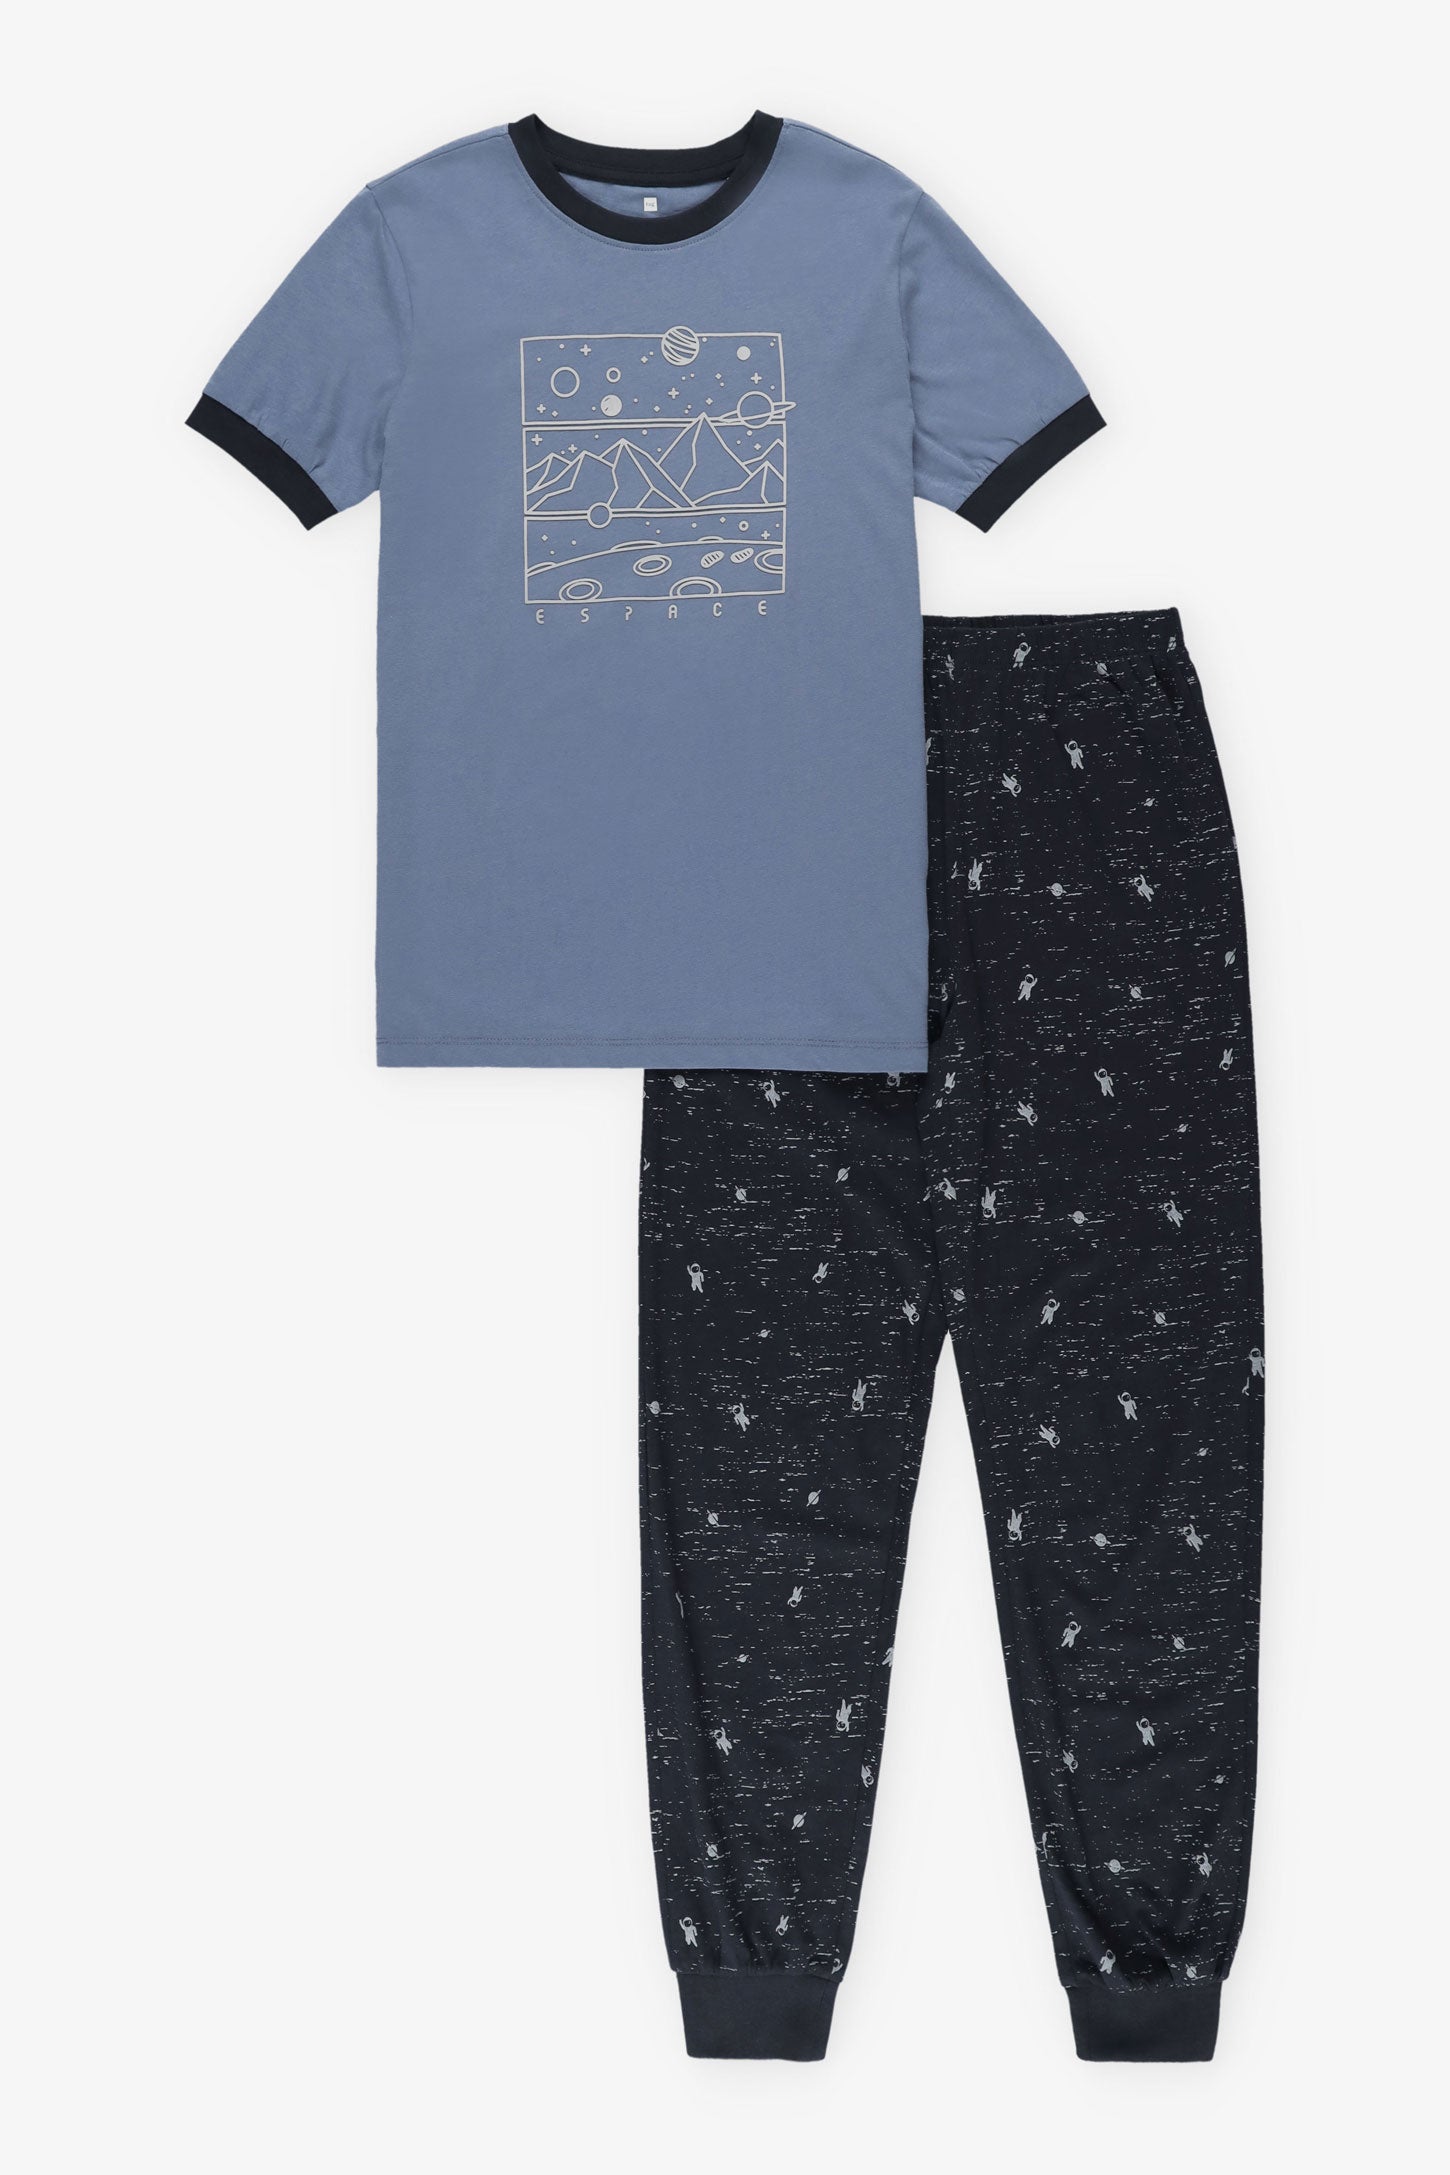 Pyjama 2-pièces en coton, 2/40$ - Ado garçon && BLEU